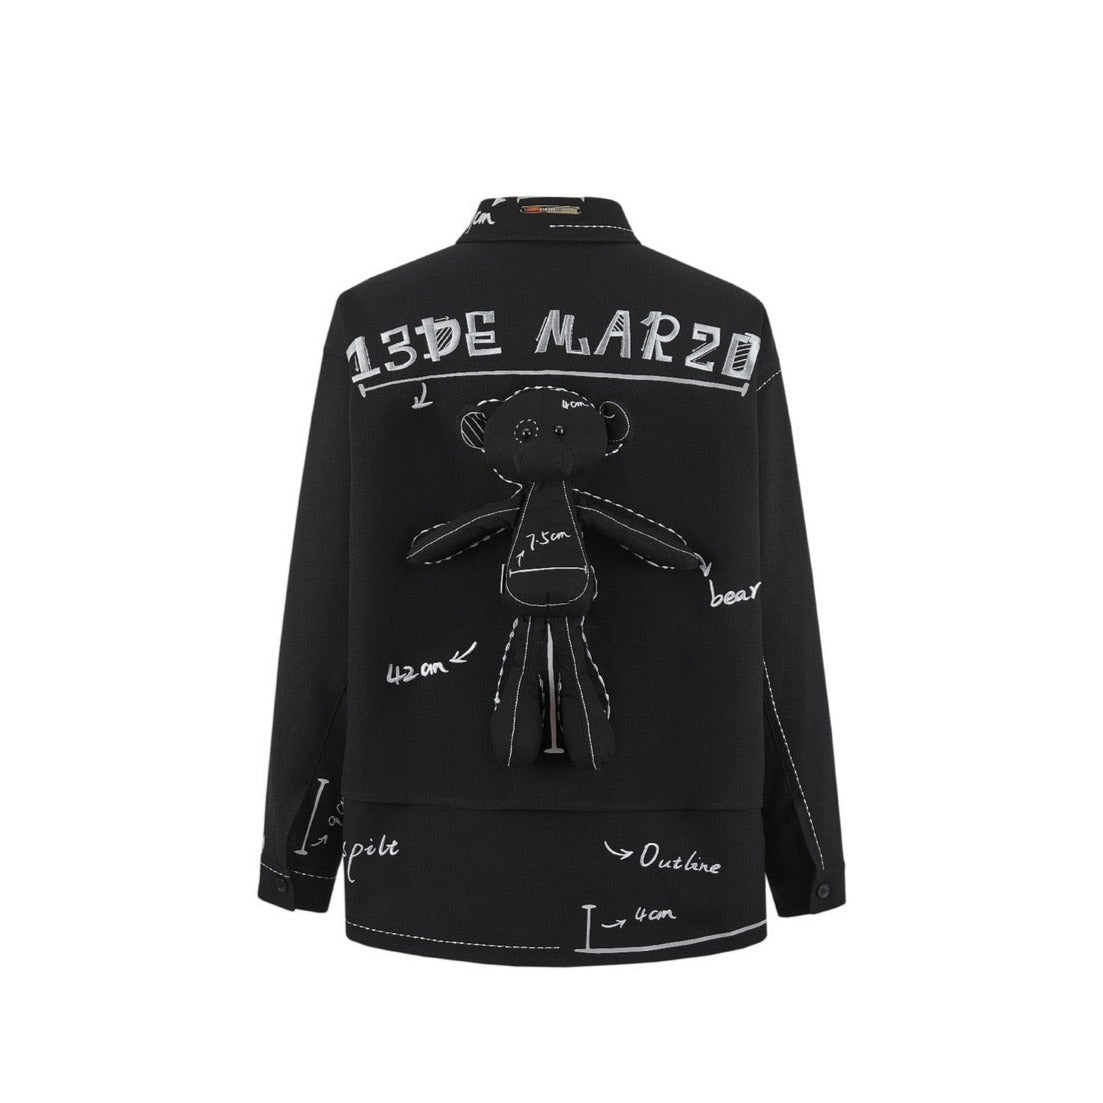 13DE MARZO Sketch Line Shirt Black